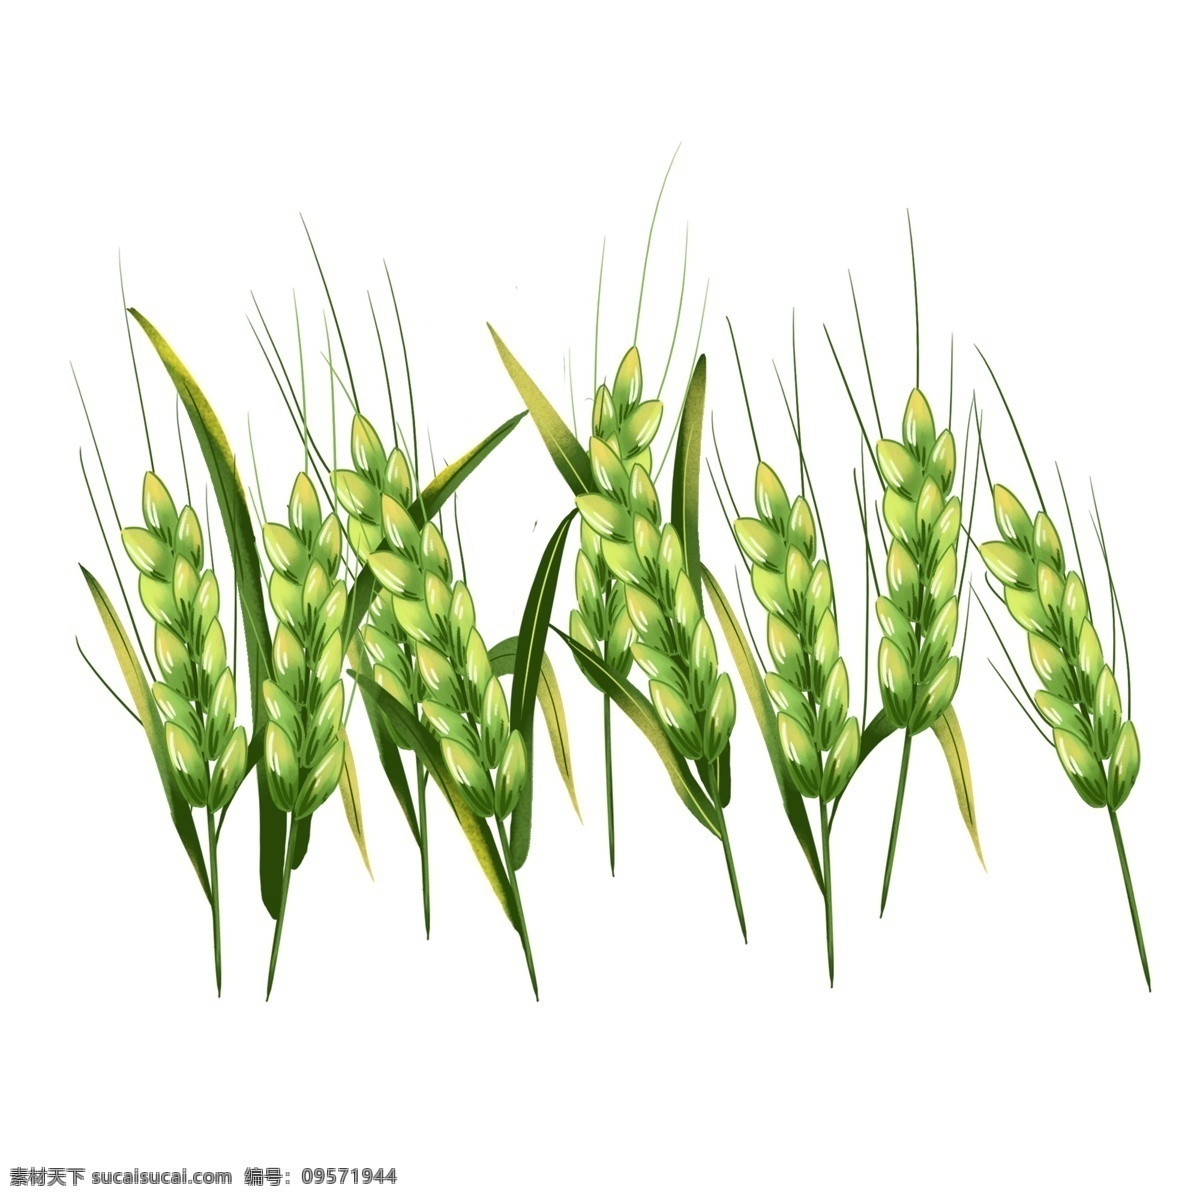 麦田里 麦穗 手绘 元素 二十四节气 小满 麦田 小麦 稻谷 粮食 农作物 农民 食物